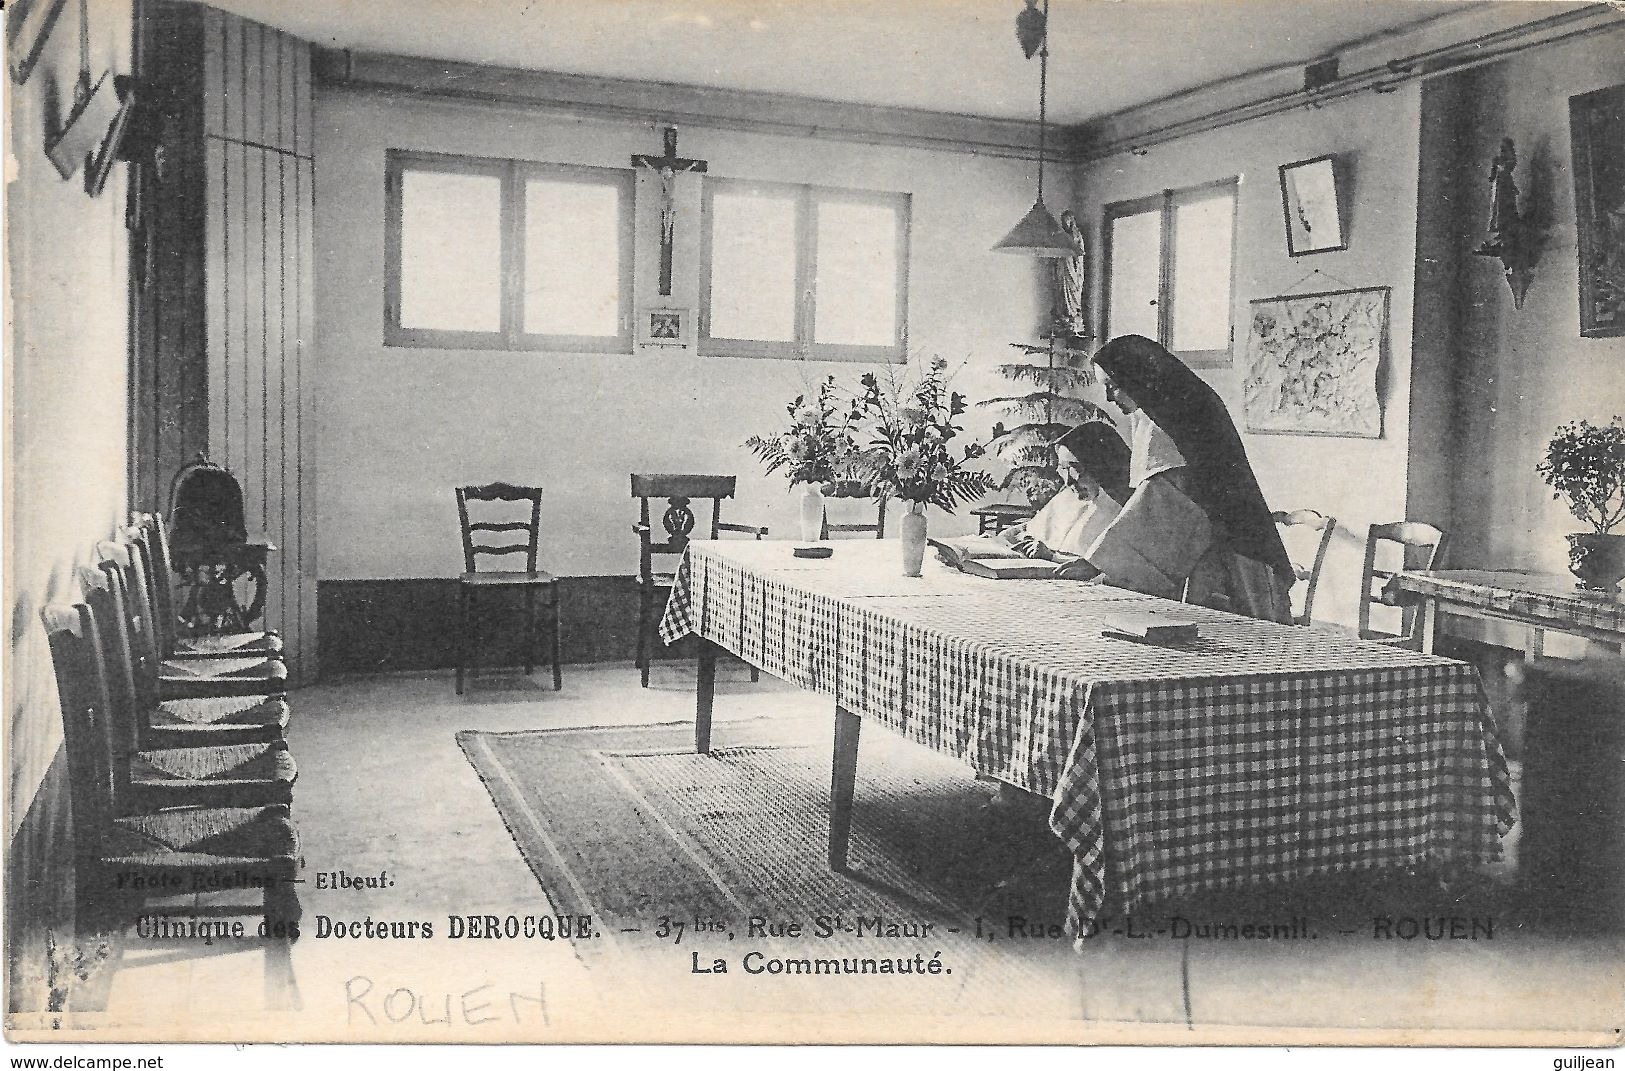 76 - ROUEN - Clinique Des Docteurs DEROCQUE - 37 Bis, Rue St Maur ; 1, Rue Du Dr L.Dumesnil - La Communauté -Bon état - Salute